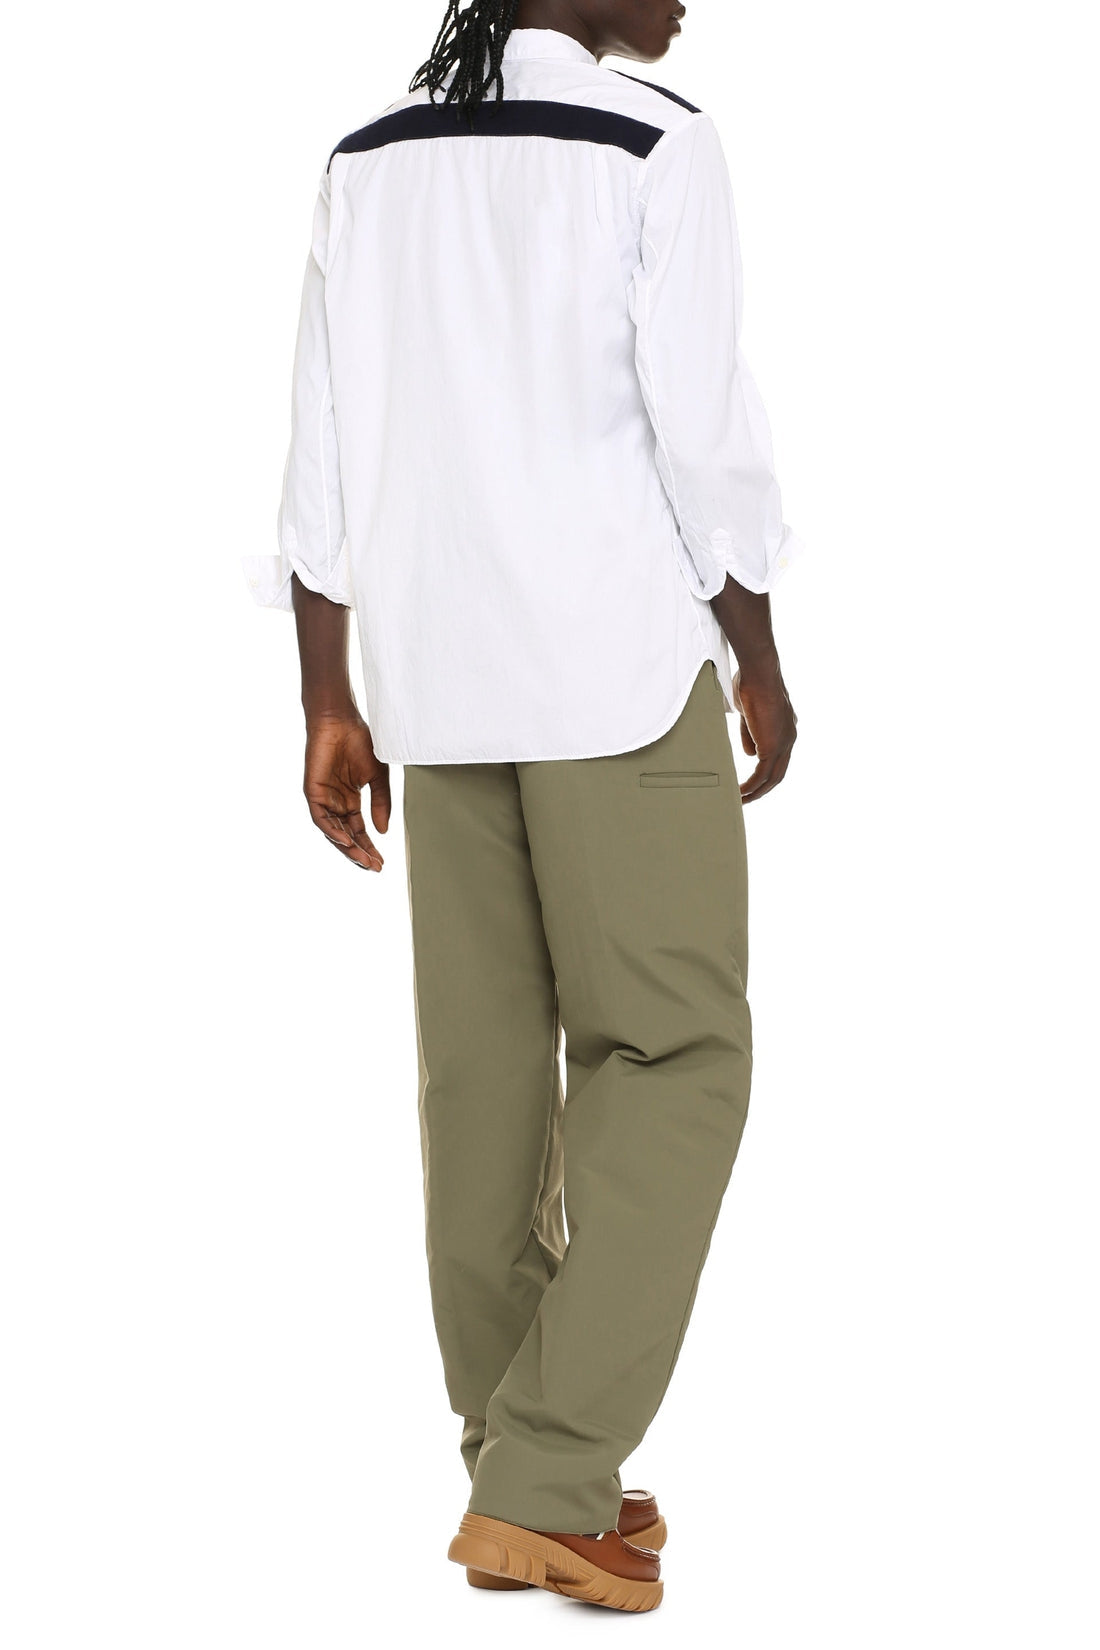 Comme des Garçons-OUTLET-SALE-Long sleeve cotton shirt-ARCHIVIST